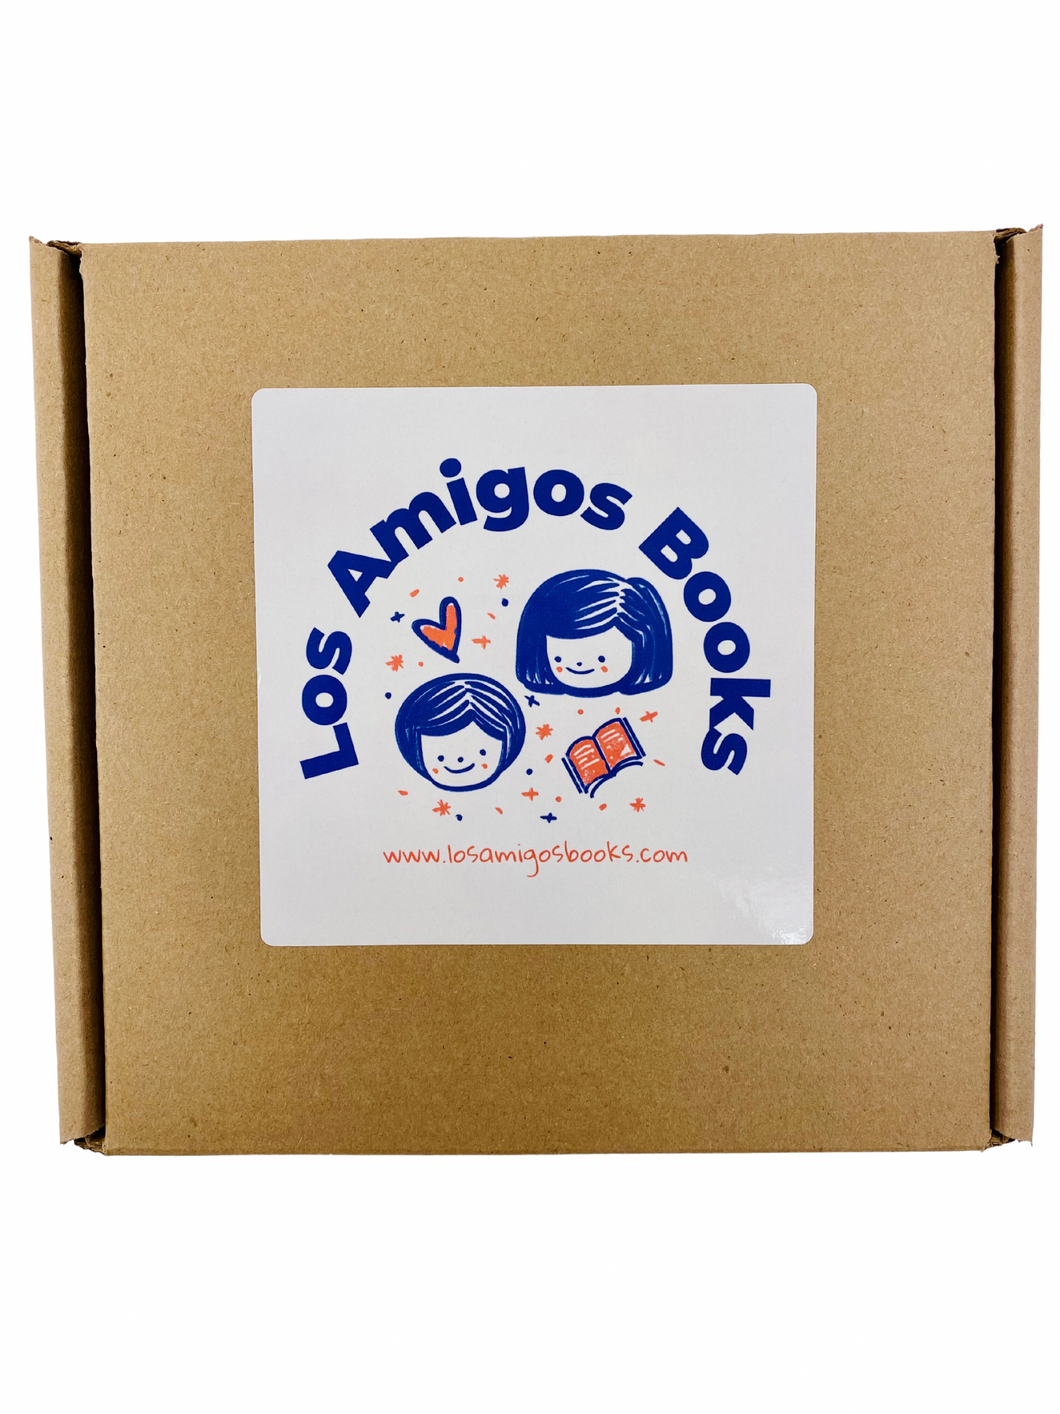 Bebé Bilingüe- Caja de Sorpresa (0-2 Años) / Bilingual Baby- Surprise Box (0-2 Years)